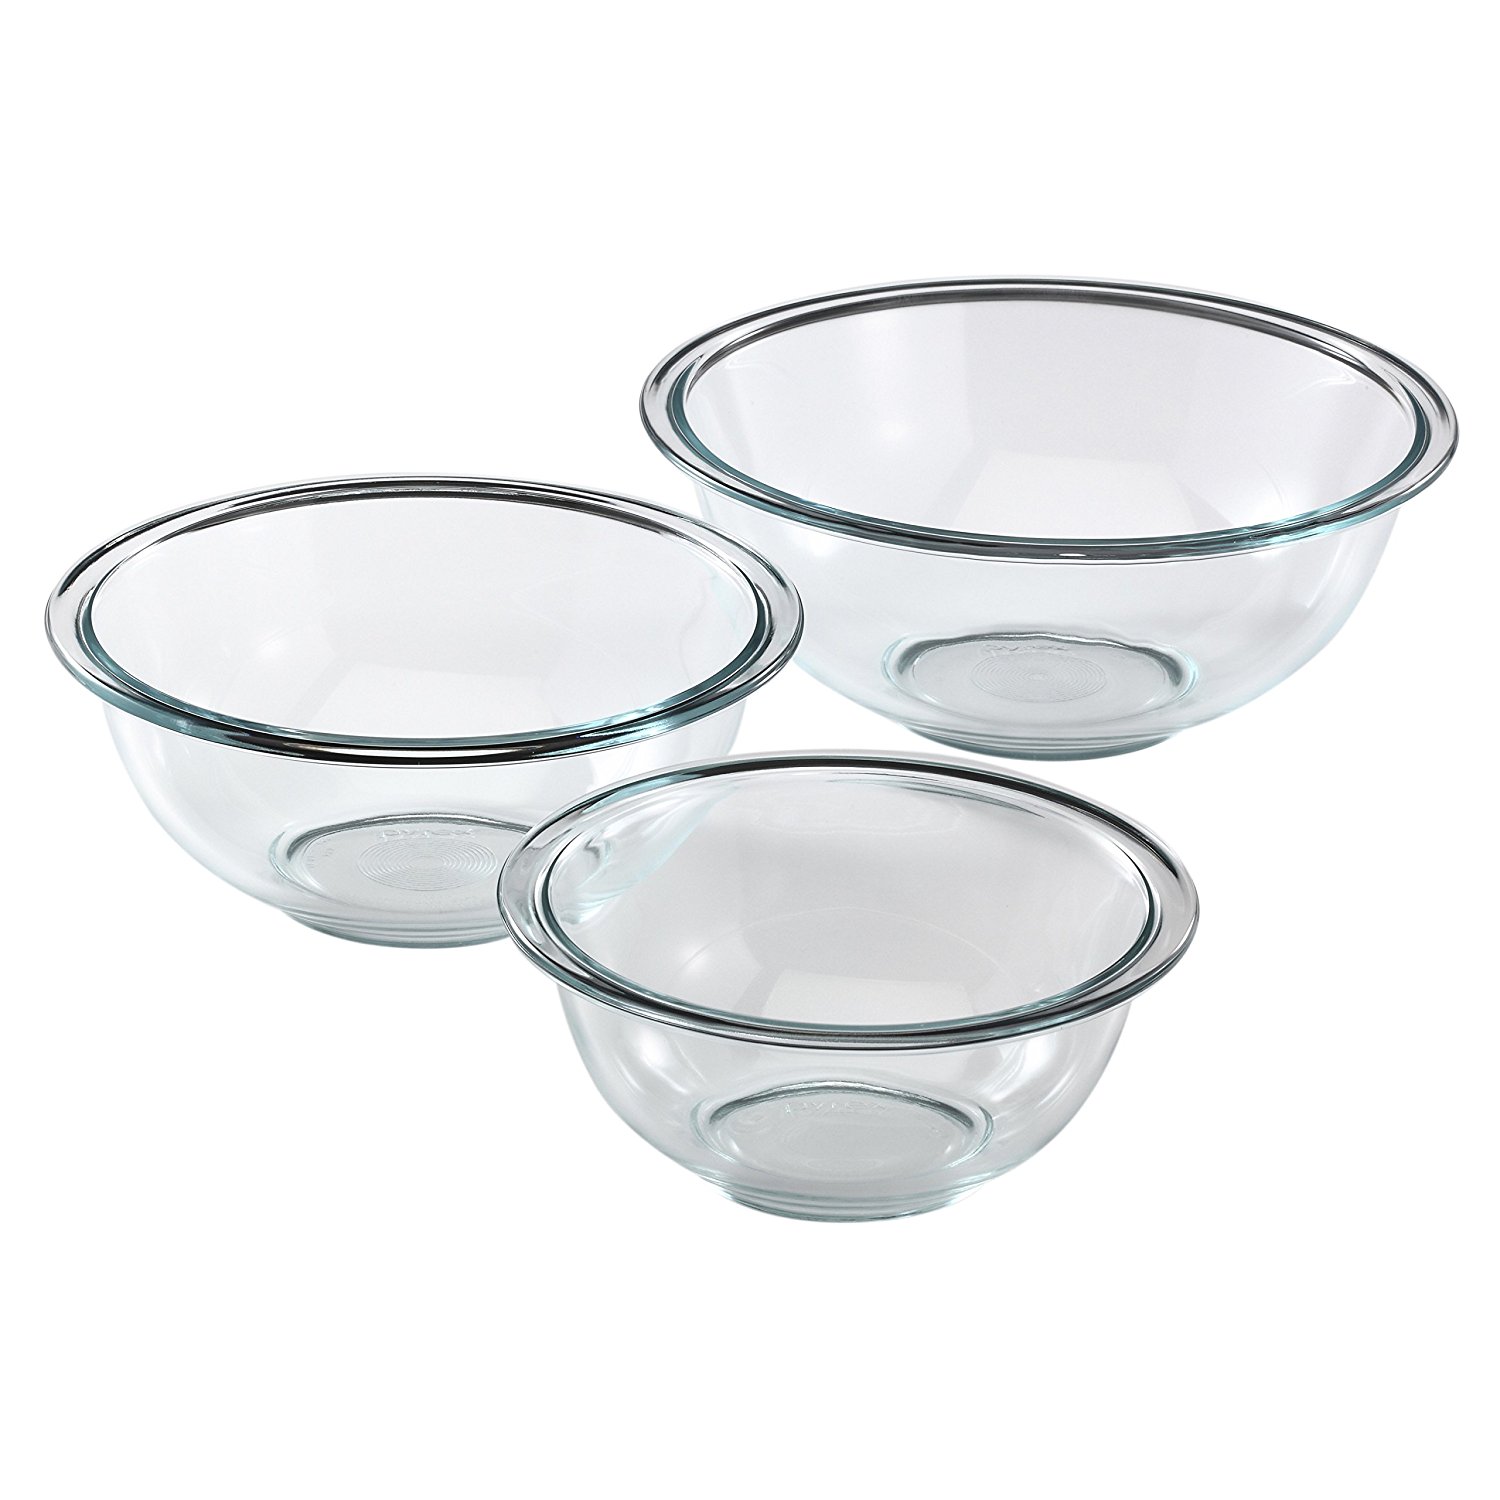 Pyrex Prepware 3-Piece Glass Mixing Bowl Set – Just $7.96!